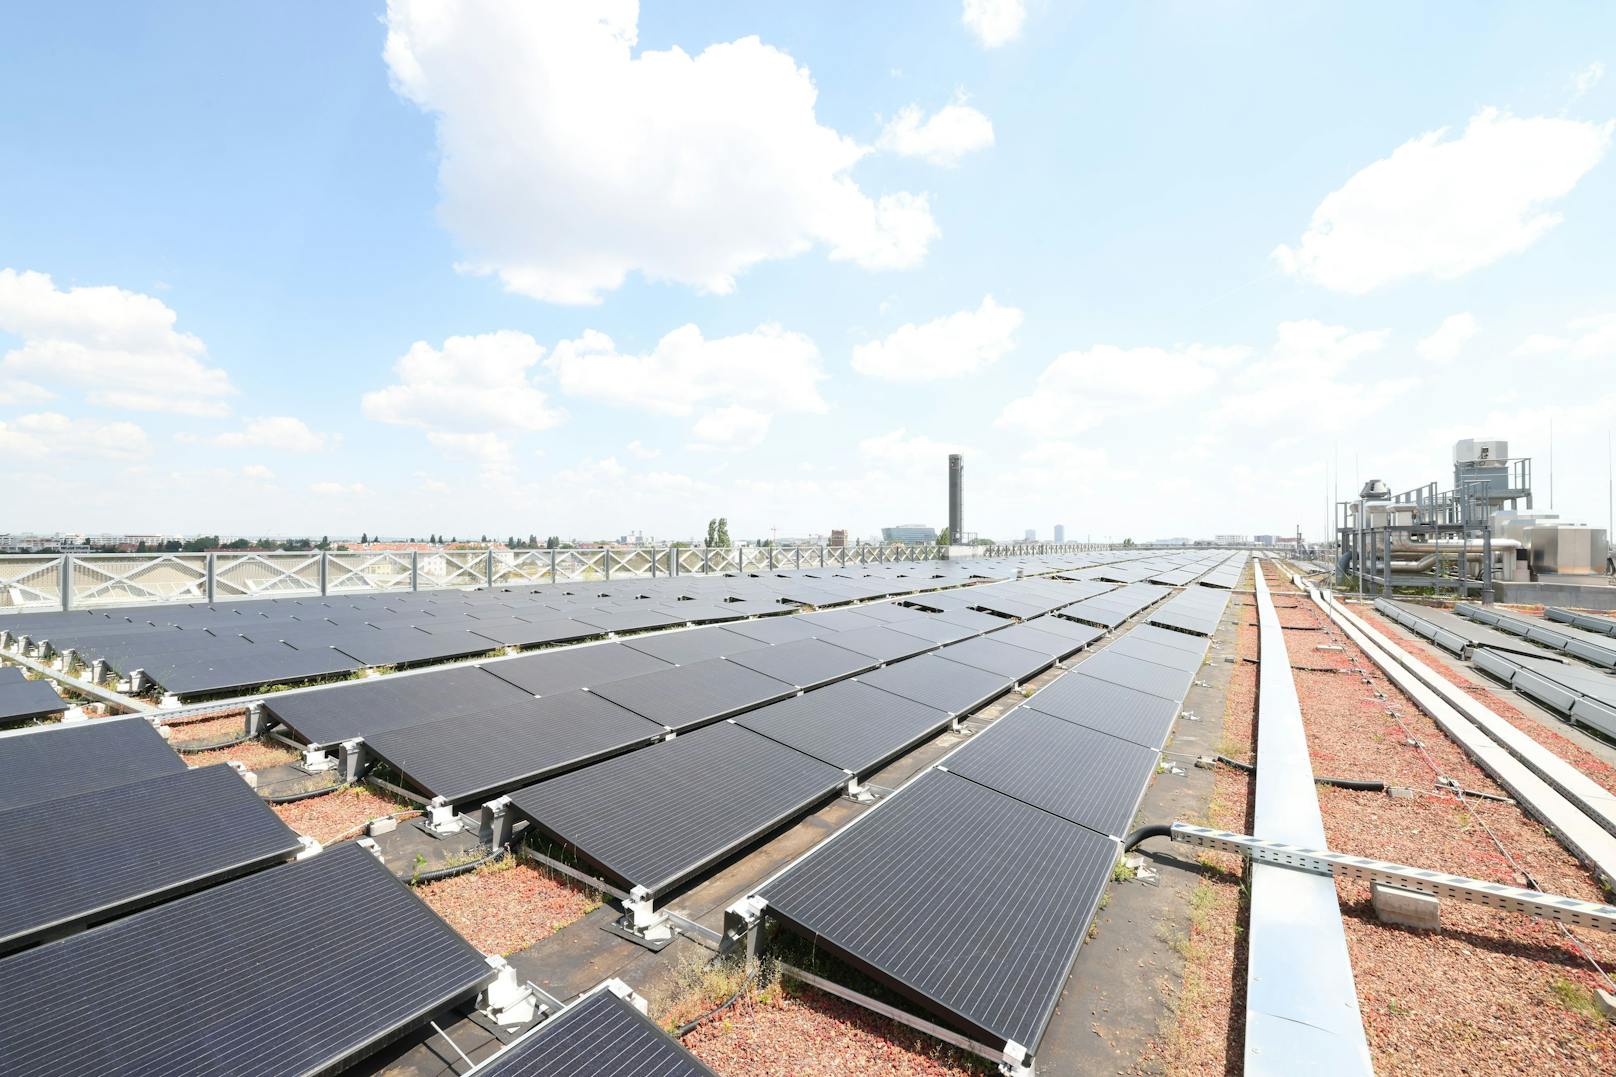 Die neue Photovoltaik-Anlage hat eine Fläche von rund 4.000 Quadratmetern und erzeugt jährlich knapp 600.000 Kilowattstunden Sonnenstrom. Das entspricht in etwa dem Strombedarf von 230 Haushalten.